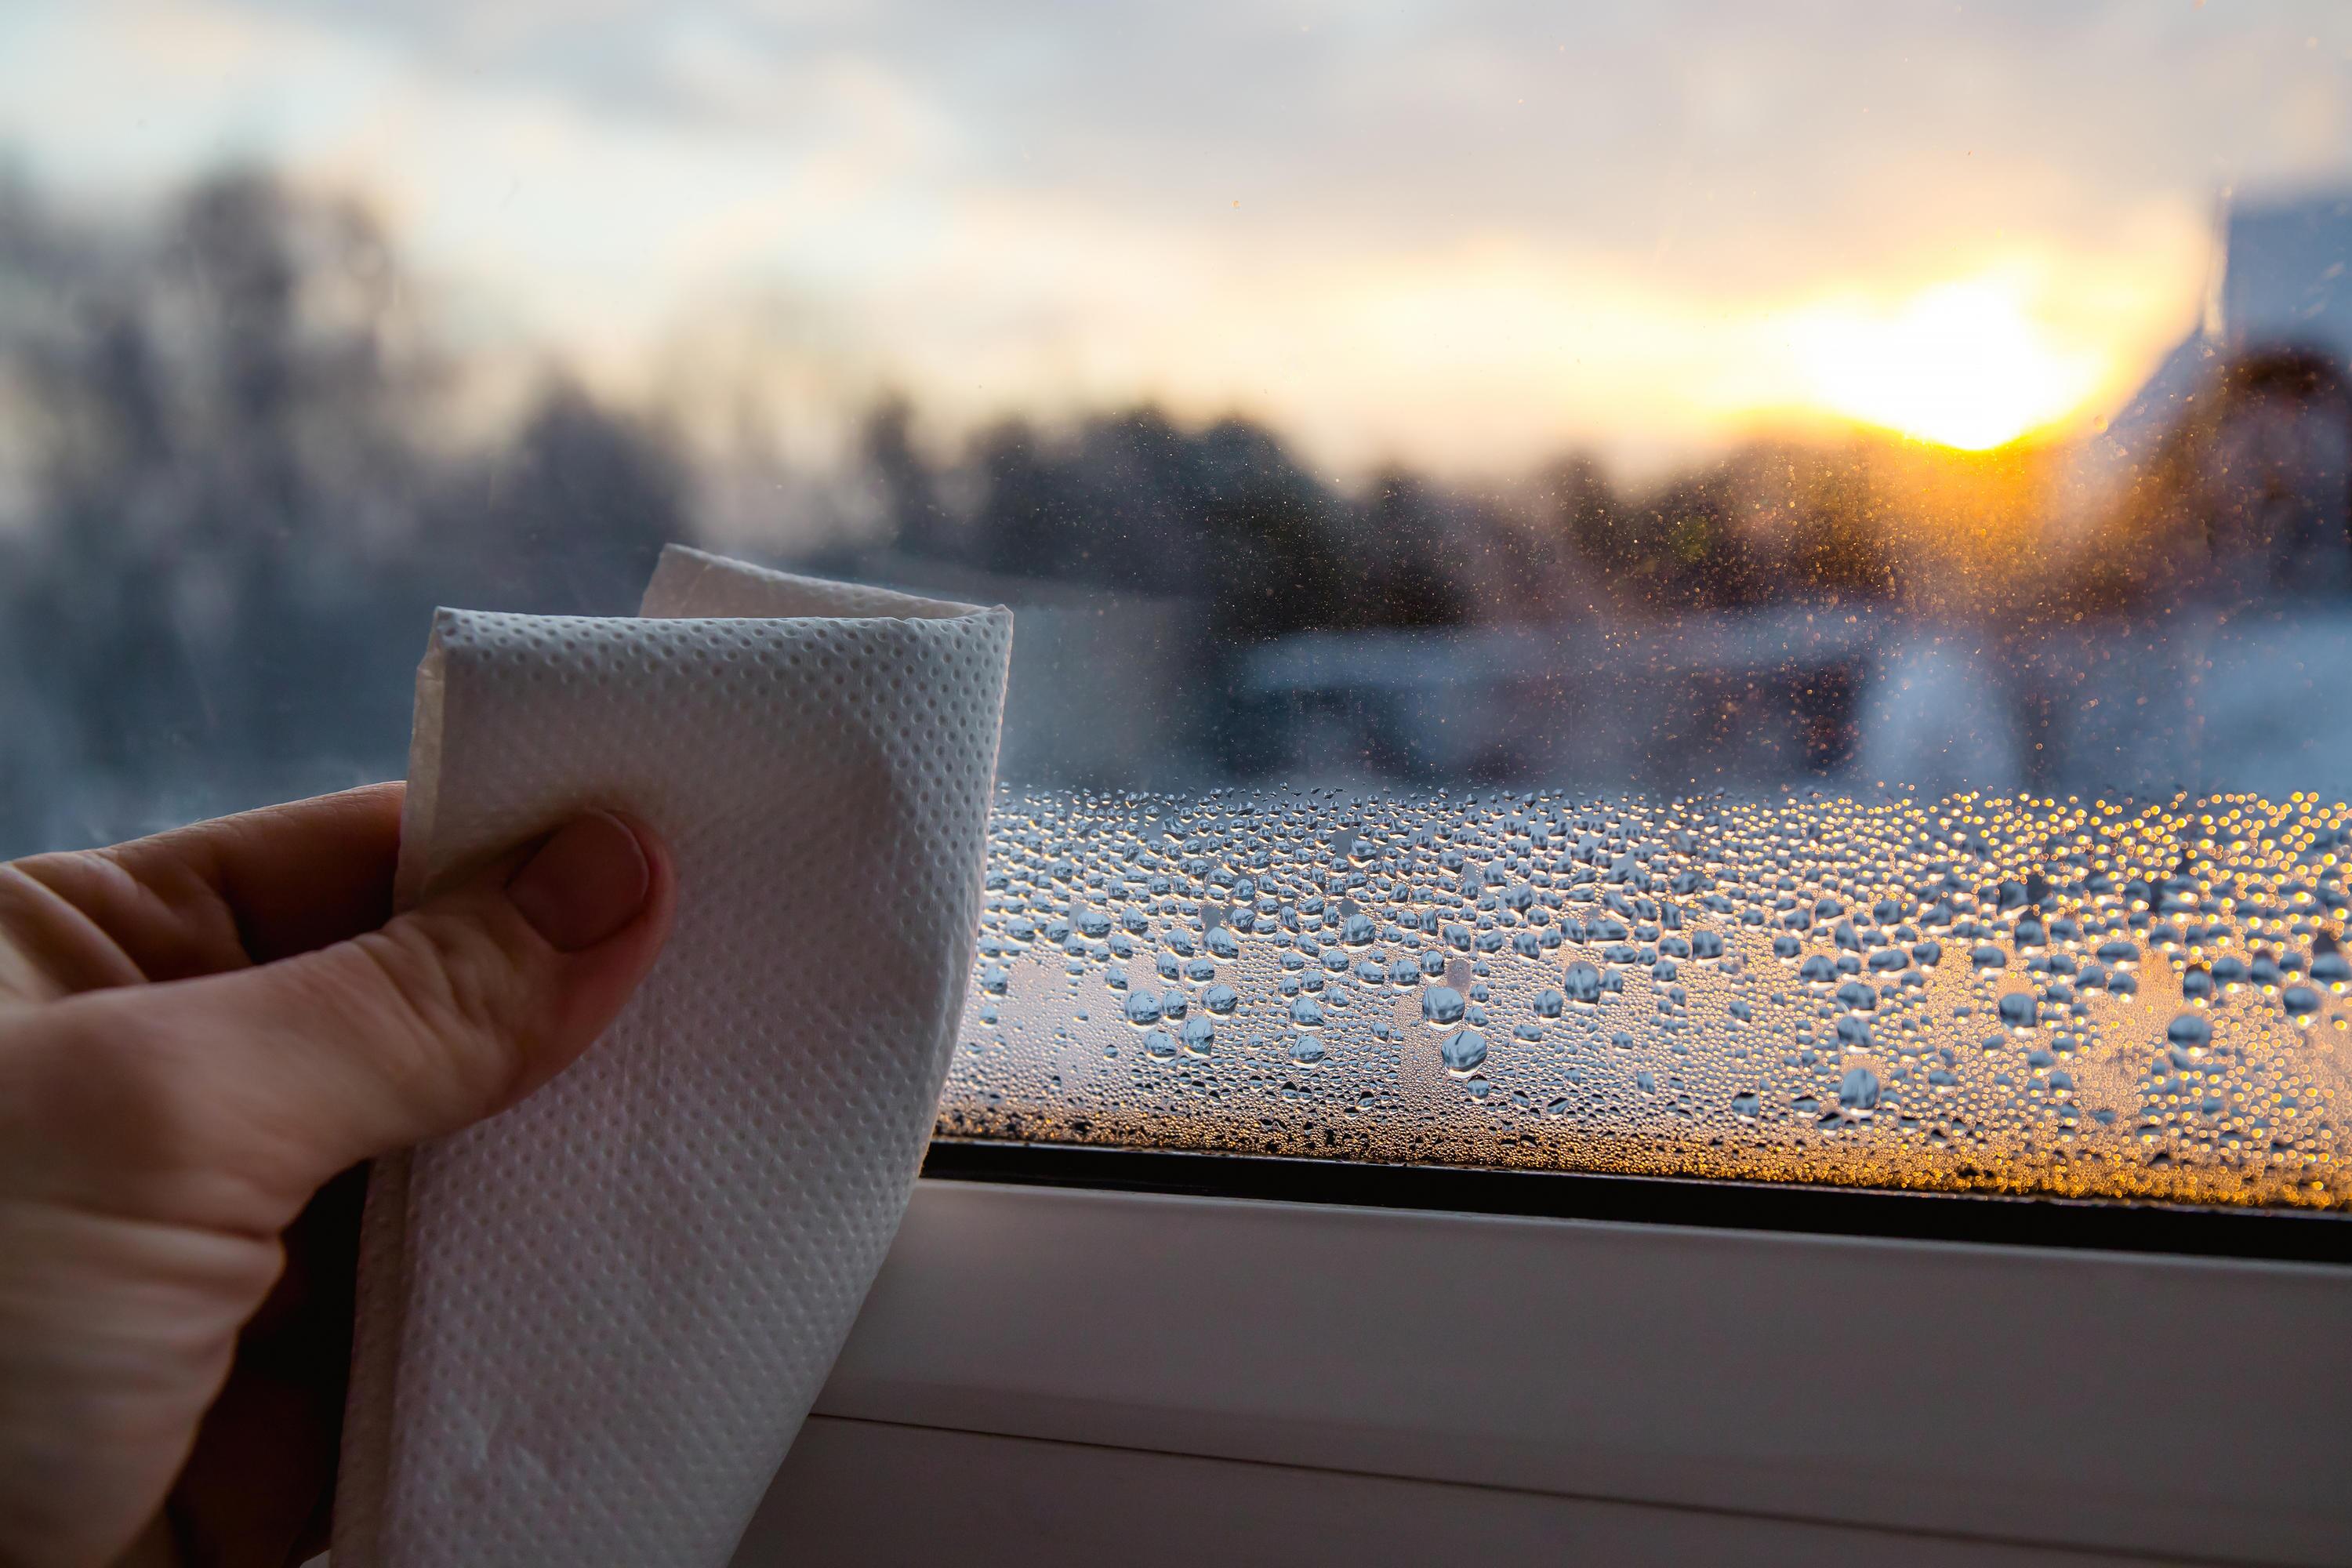 Lüften im Winter: Das hilft gegen Kondenswasser am Fenster